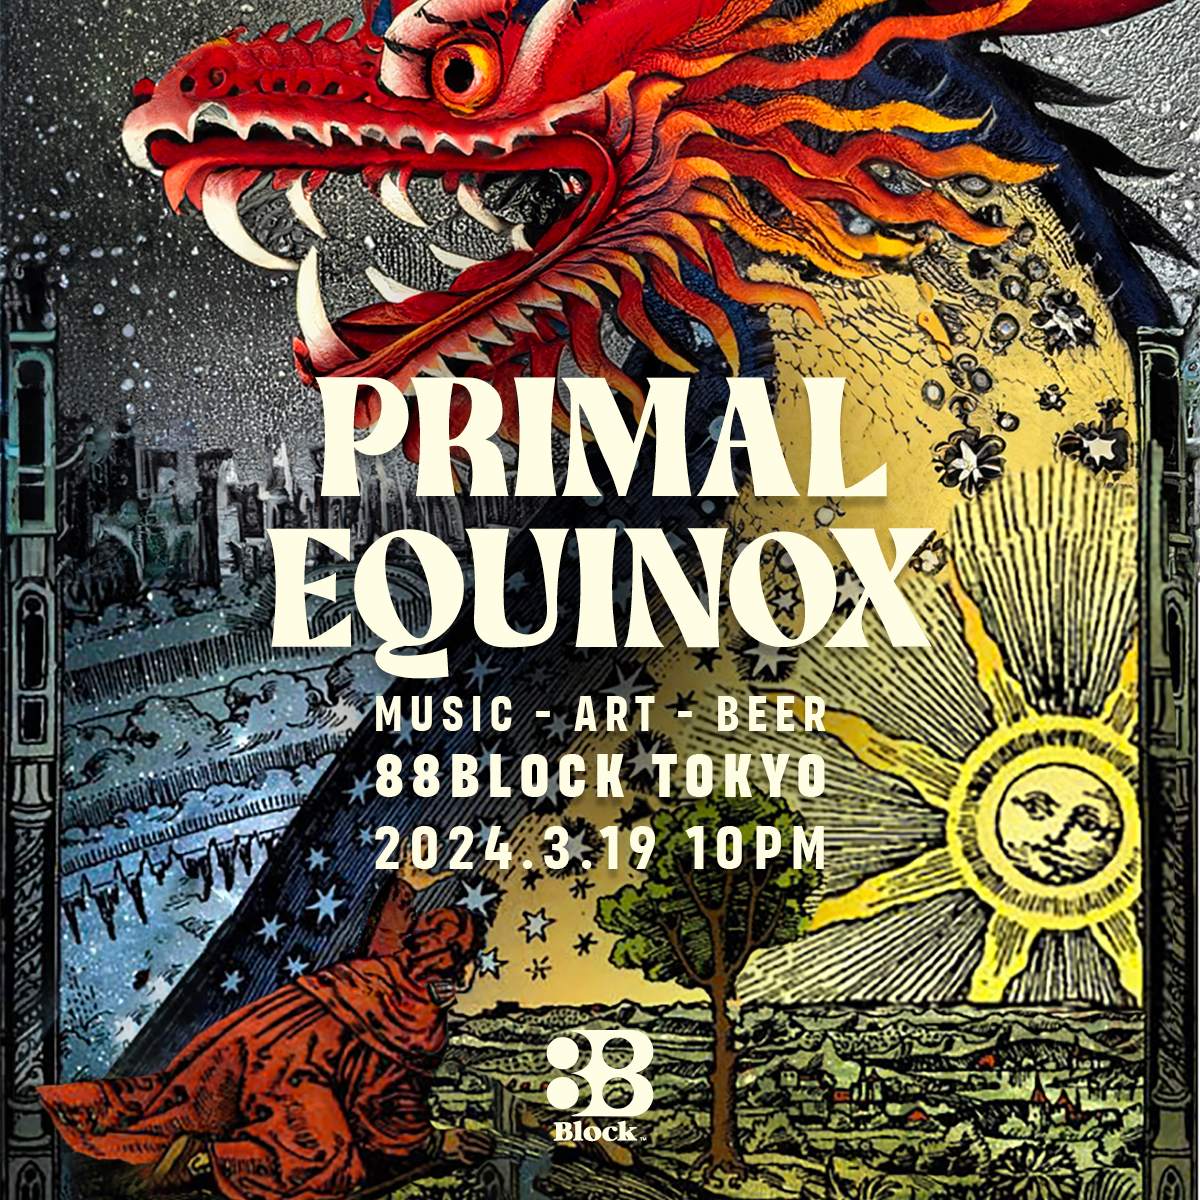 PRIMAL EQUINOX - フライヤー裏